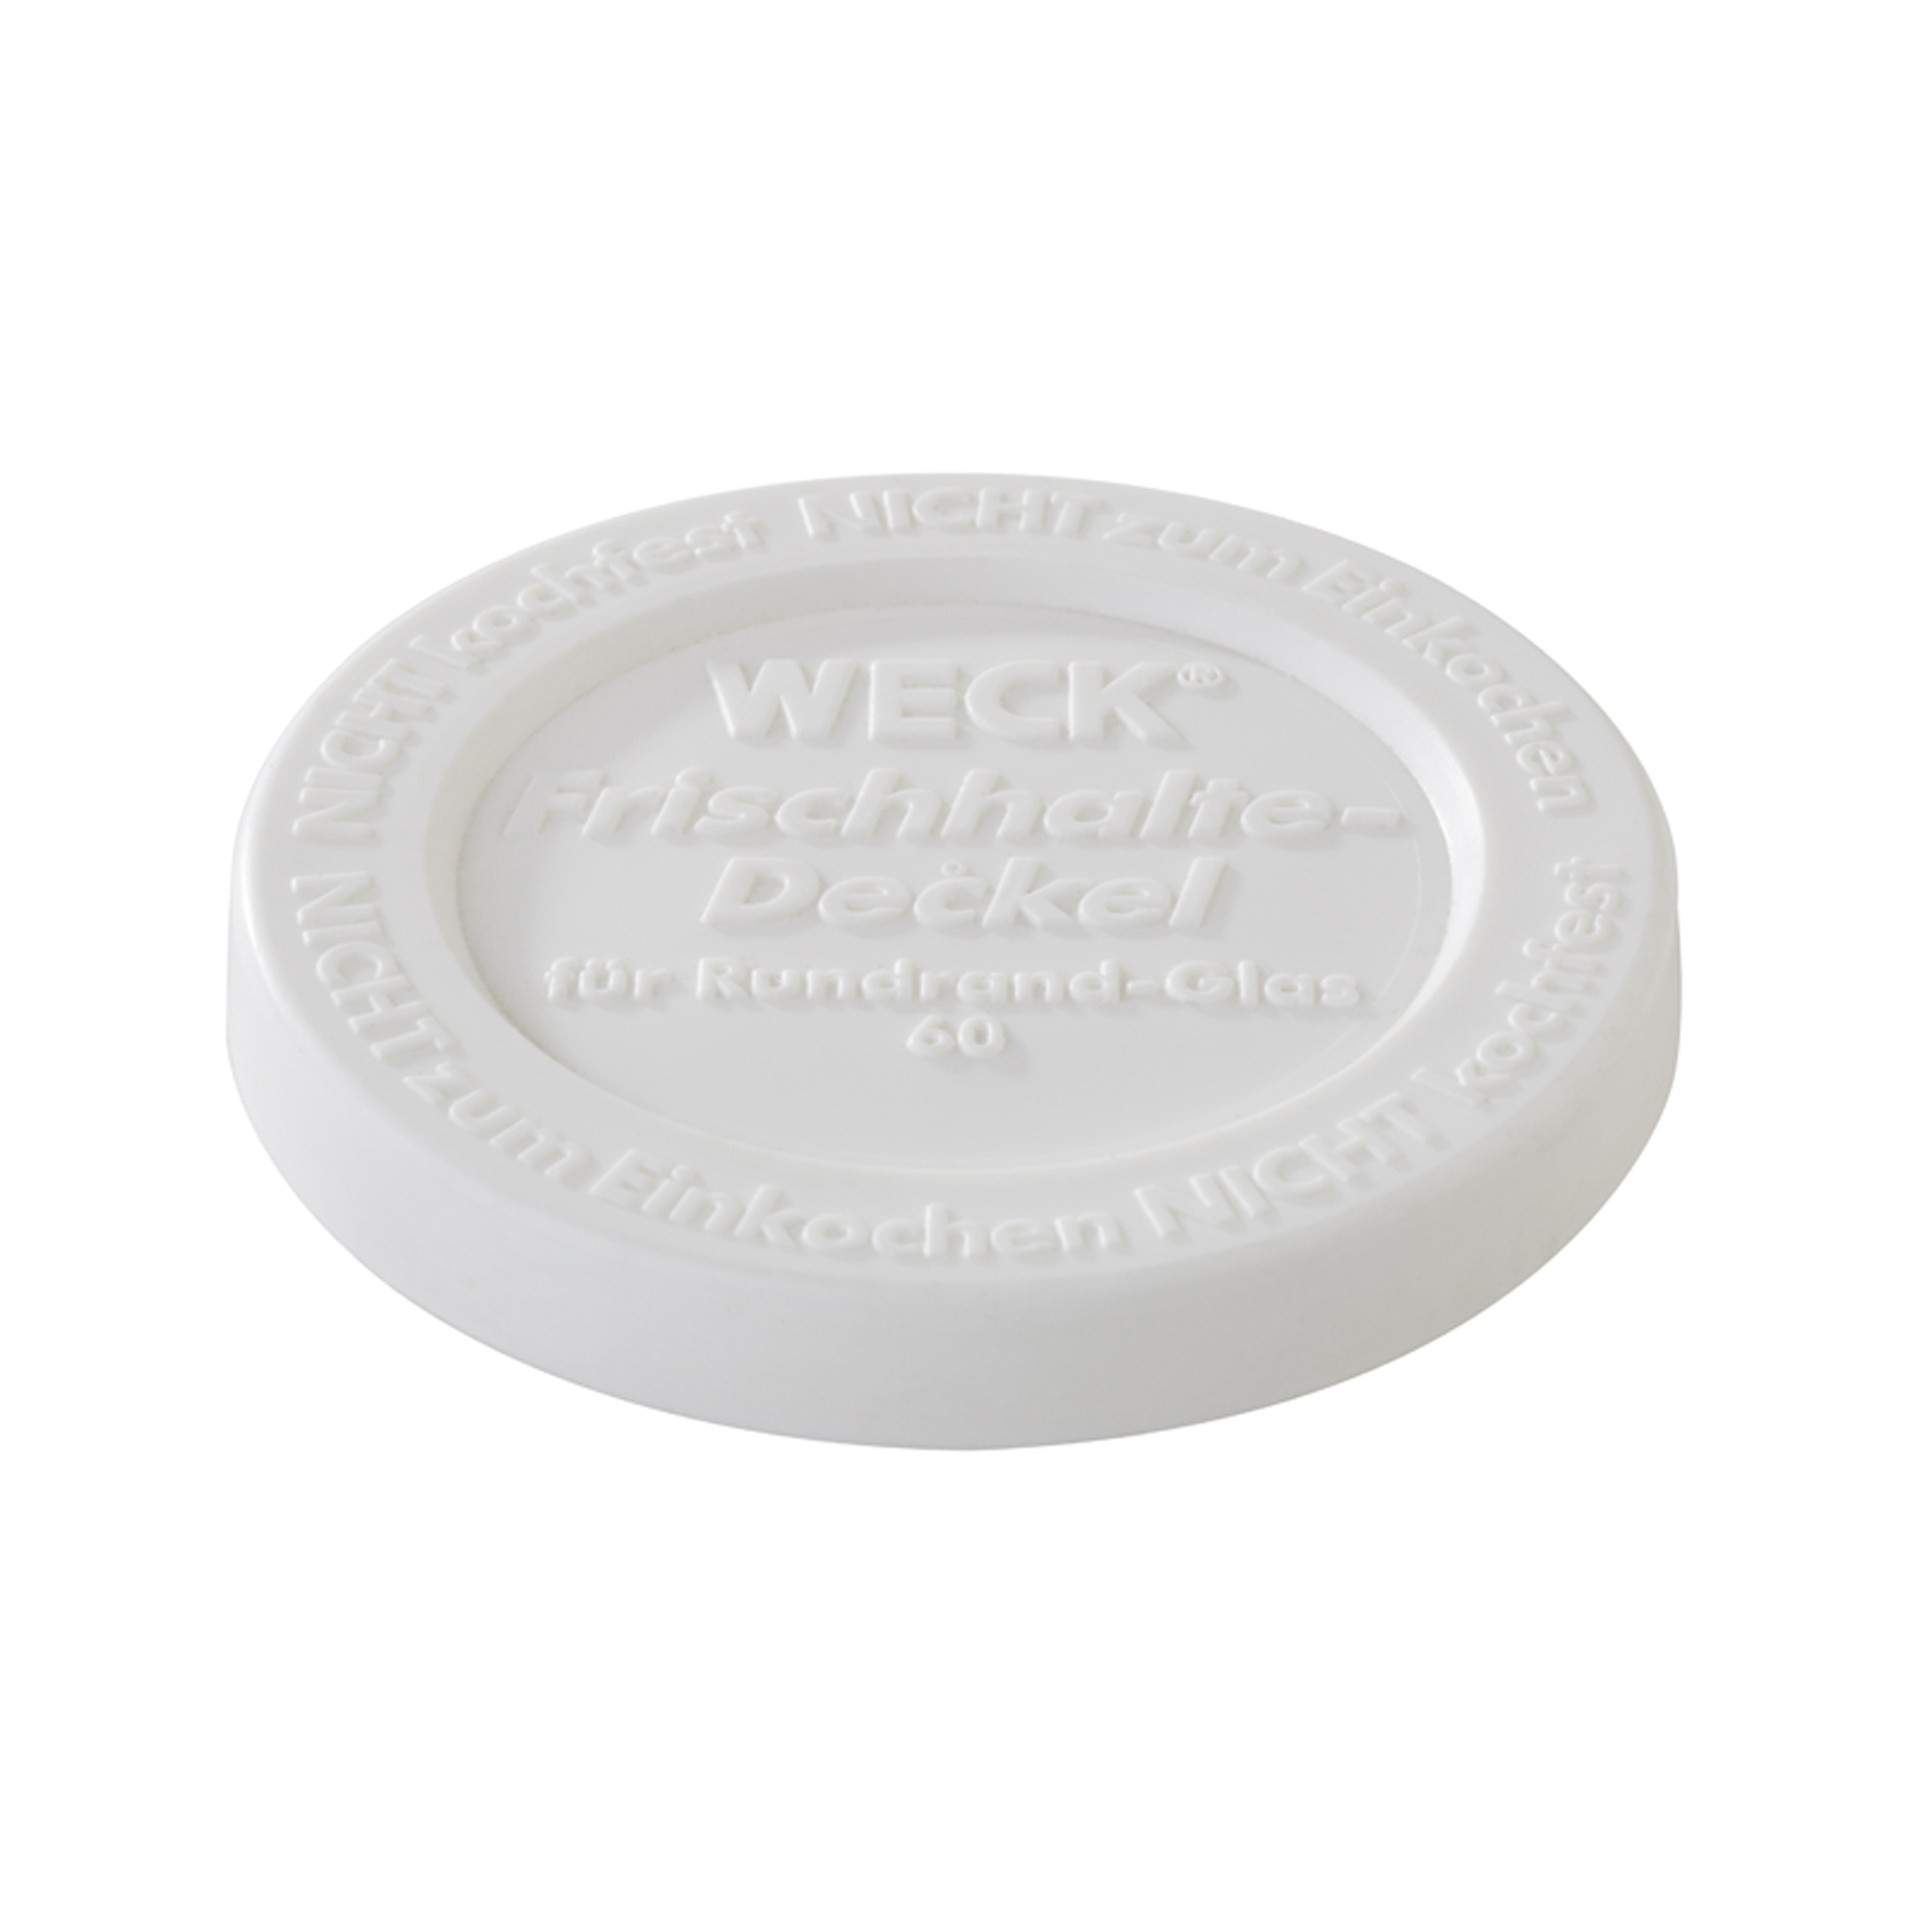 Weck-Frischhaltedeckel - 5er Set - weiß - Abm. 1,0 cm - Ø 7,0 cm - Polyethylen - 82338-B